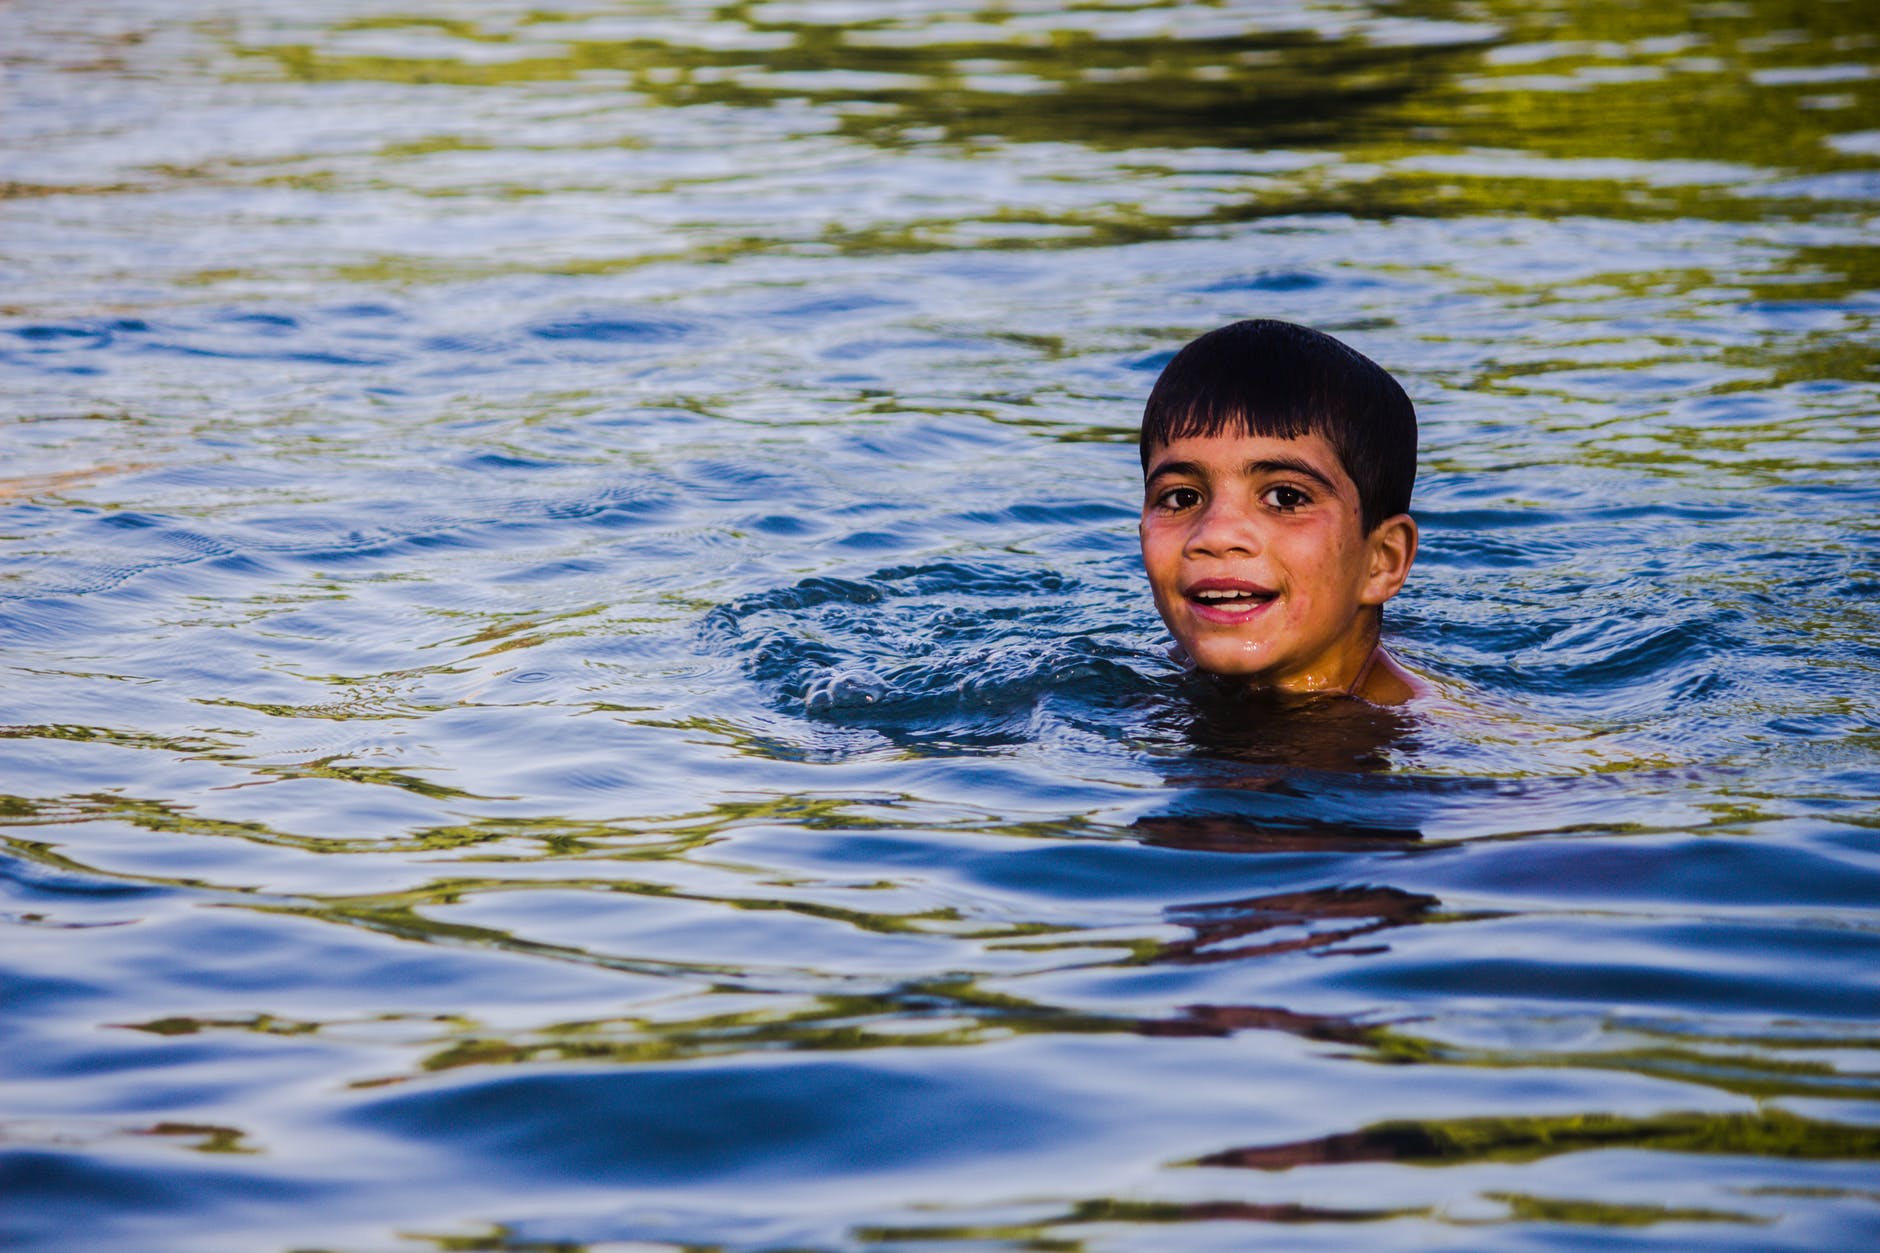 Jack lui a assuré qu'il pouvait nager et trouver de l'aide. | Source : Pexels